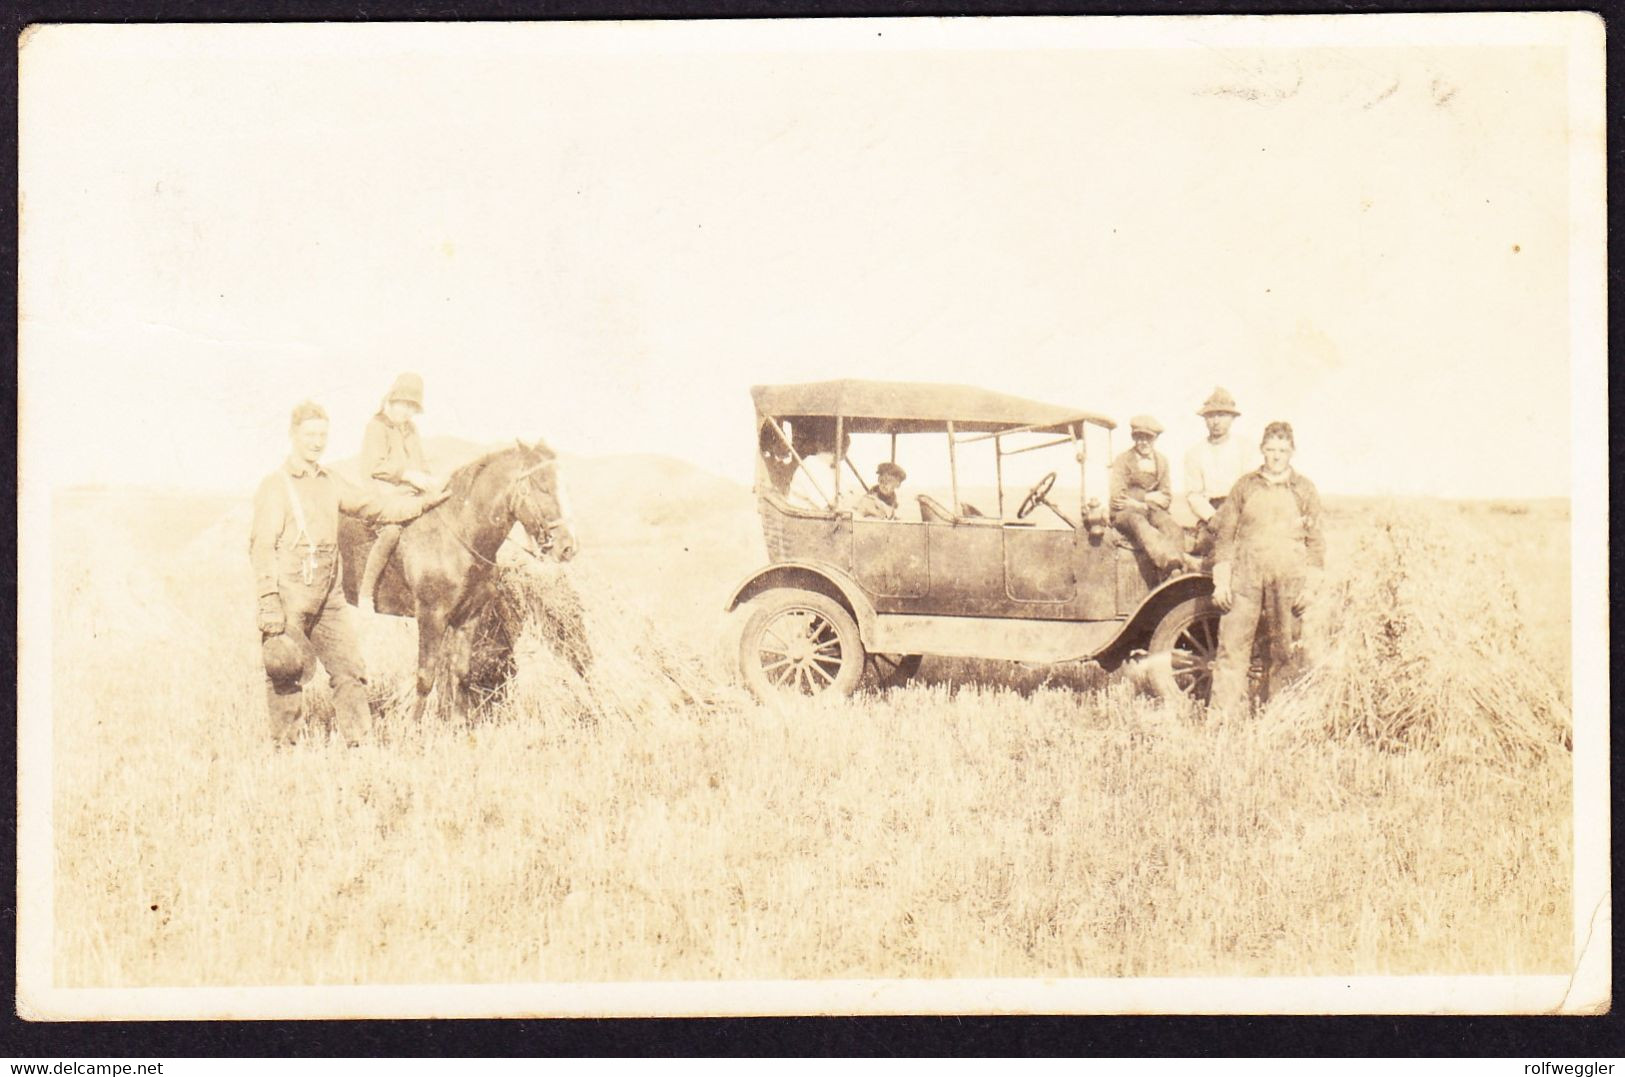 1927 Gelaufene Foto AK Aus Edmonton Nach St. Gallen. 1 Marke Defekt. Seltene Fotokarte Mit Auto Und Pferd Im Feld - Edmonton